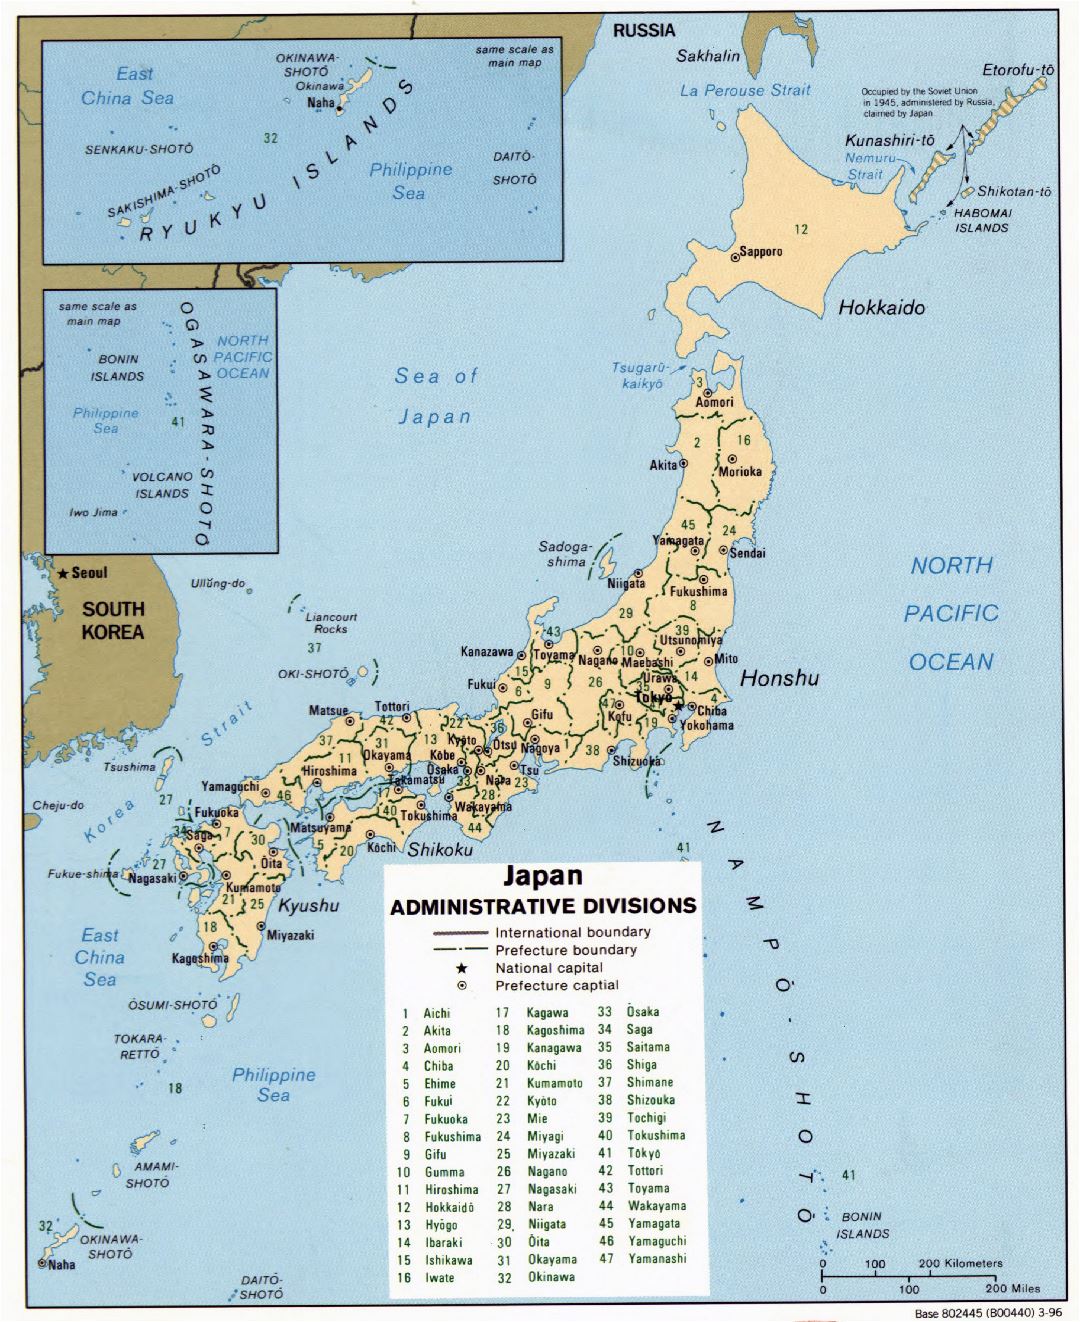 Grande detallado mapa de administrativas divisiones de Japón - 1996